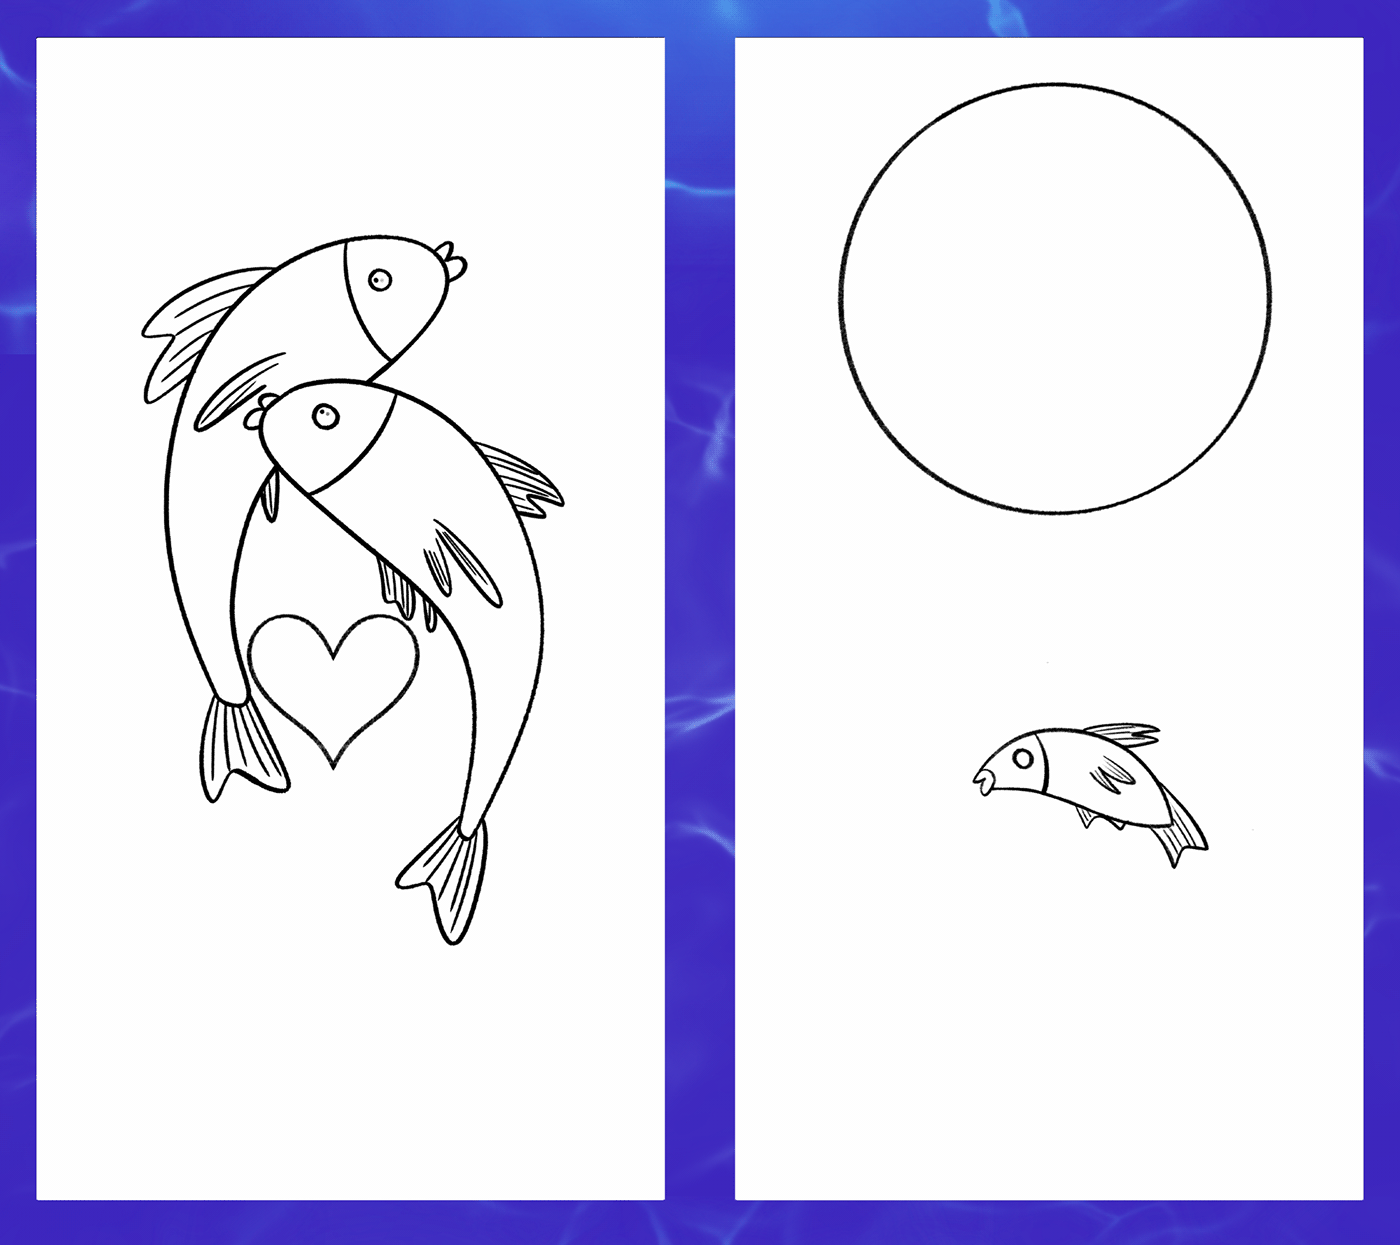 Tarot Cards digital illustration fish tarot card ILLUSTRATION  Illustrator Digital Art  artwork blue